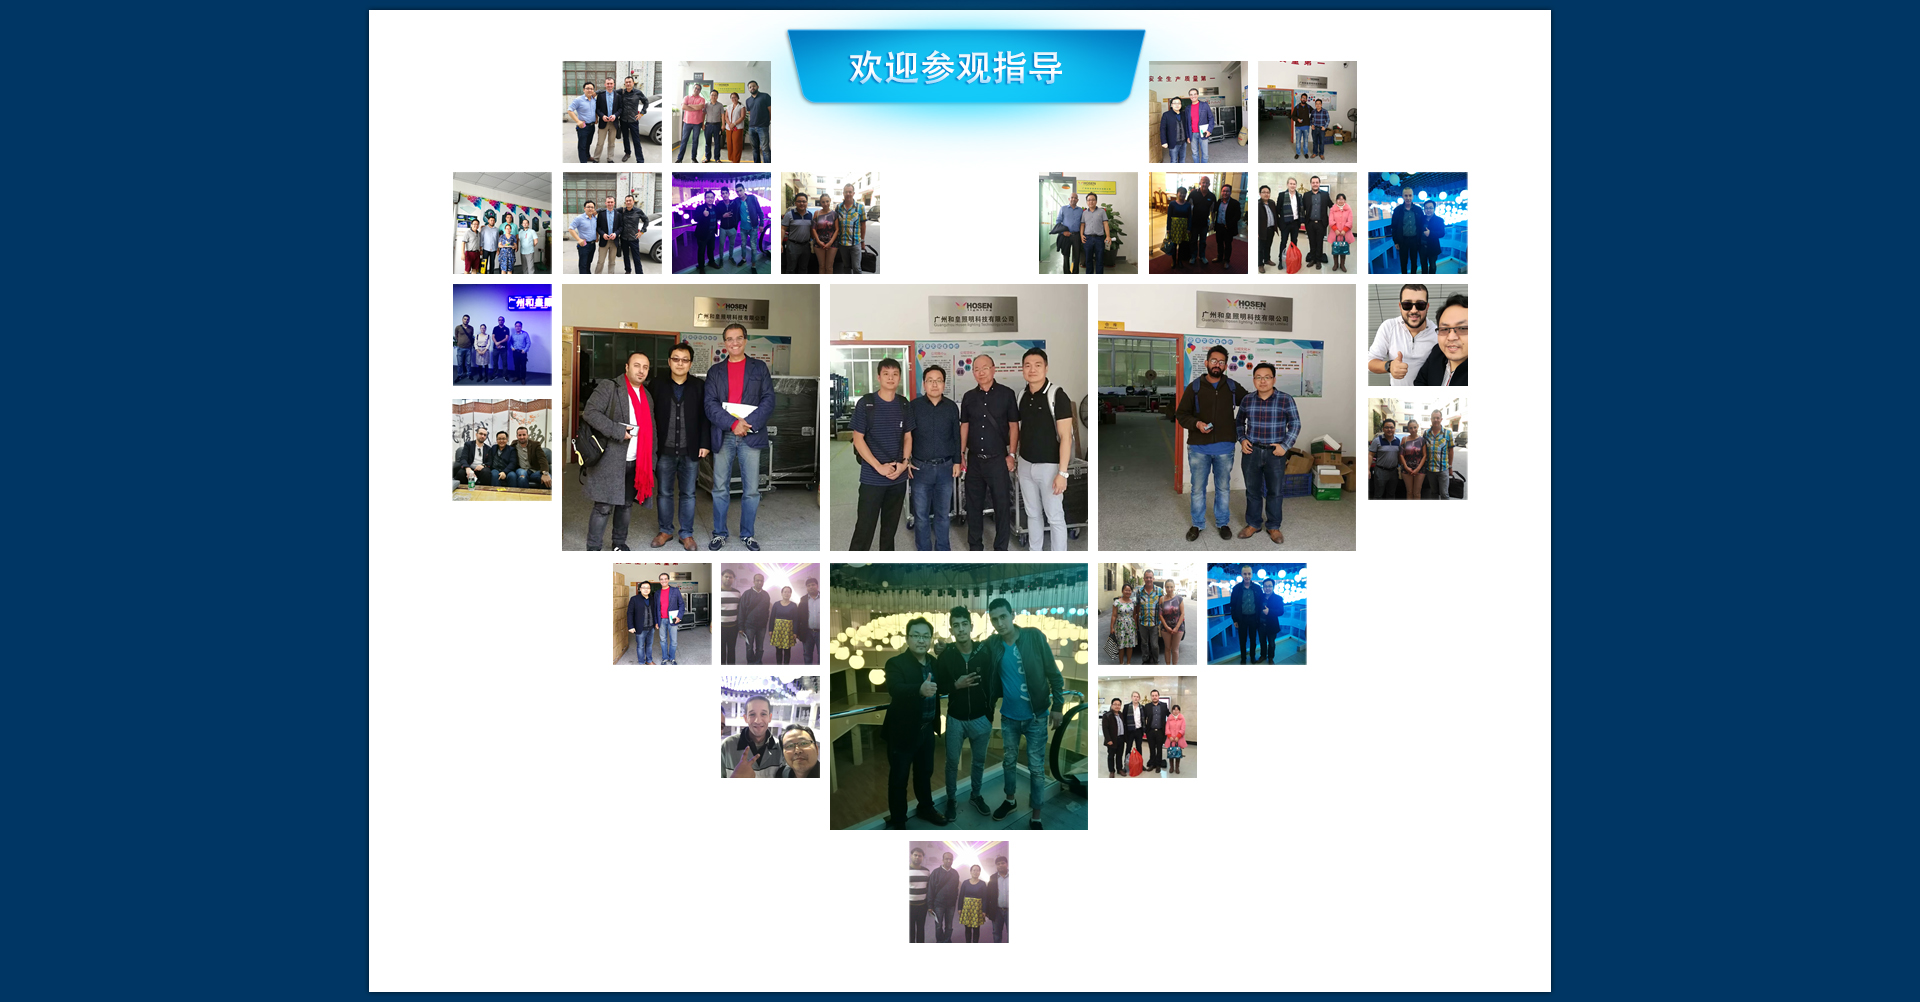 广州和皇照明科技有限公司  Guangzhou Hosen Lighting Technology Limited